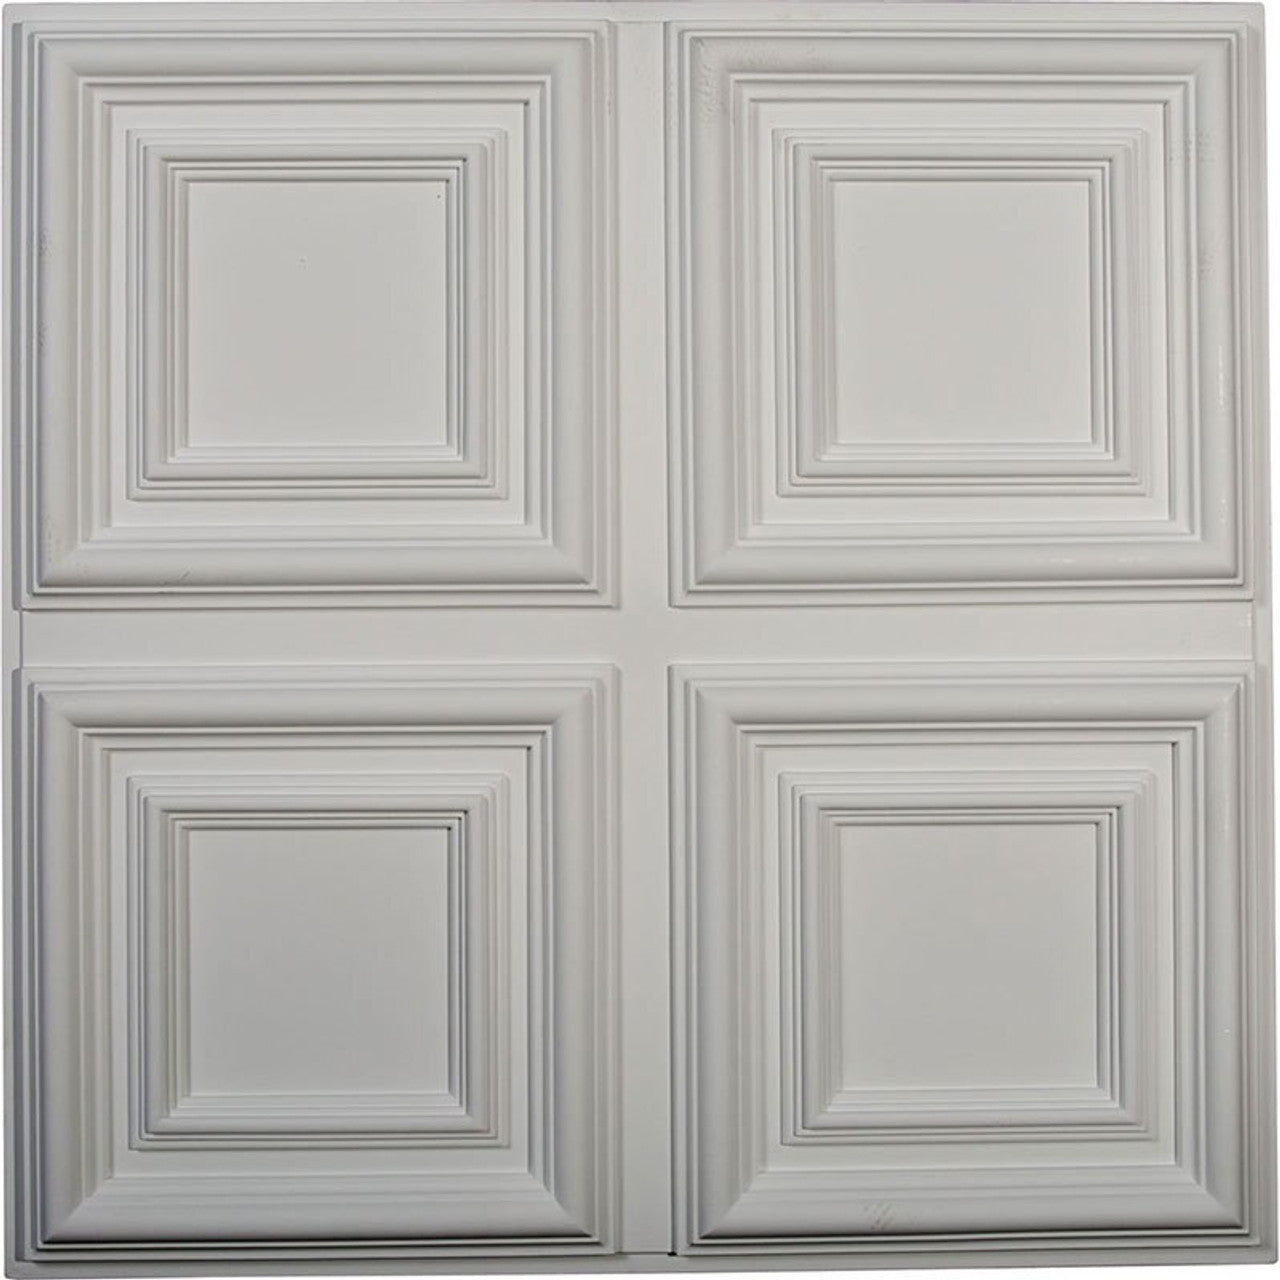 Quatro Square - Urethane Ceiling Tile - 24"x24"